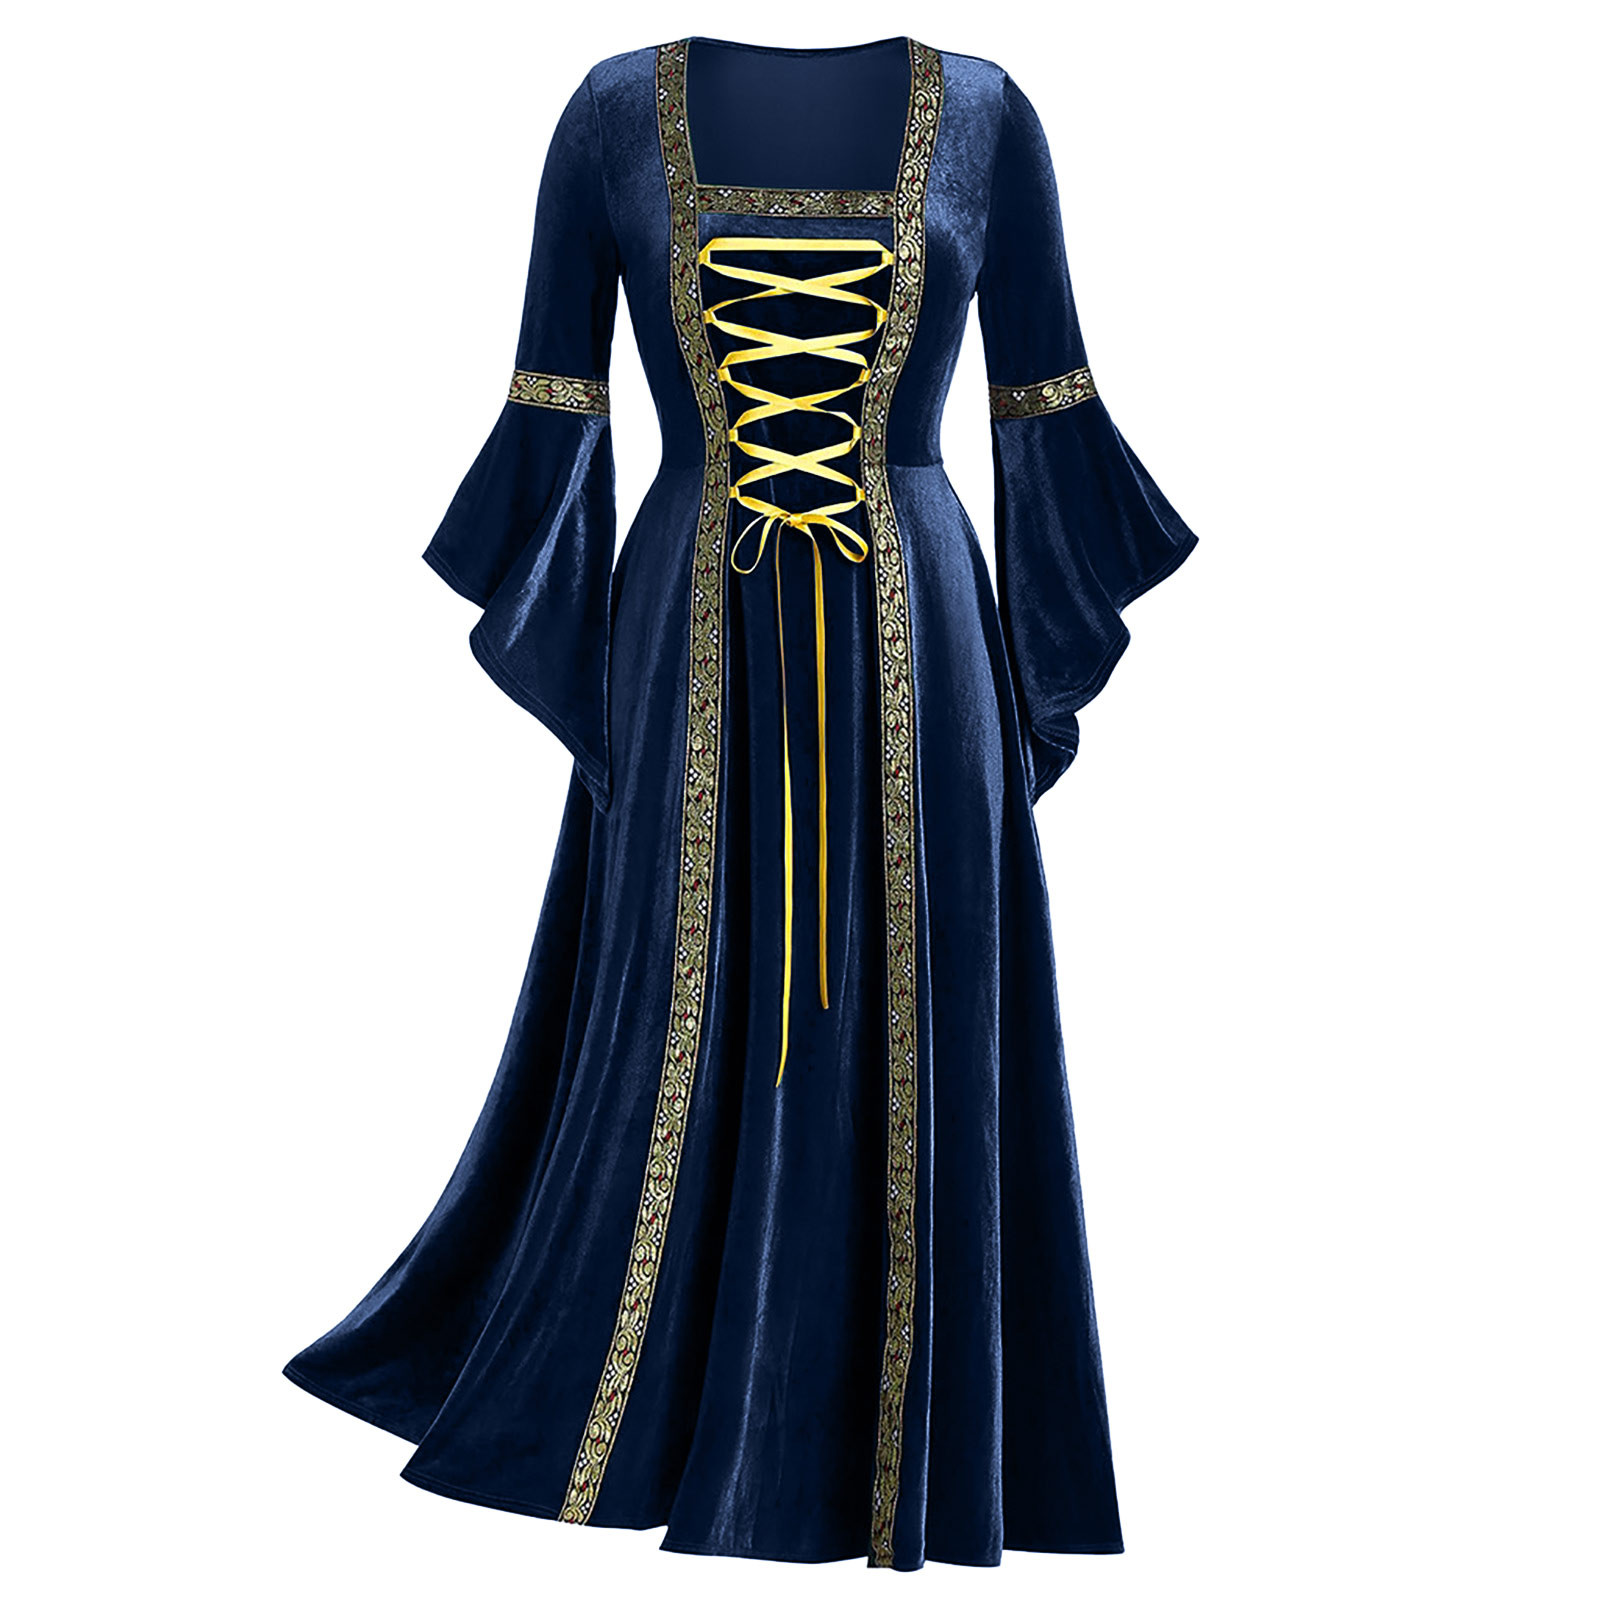 Fanxing 1800s Women Renaissance Dresses Lace Up Bandage Medieval ...